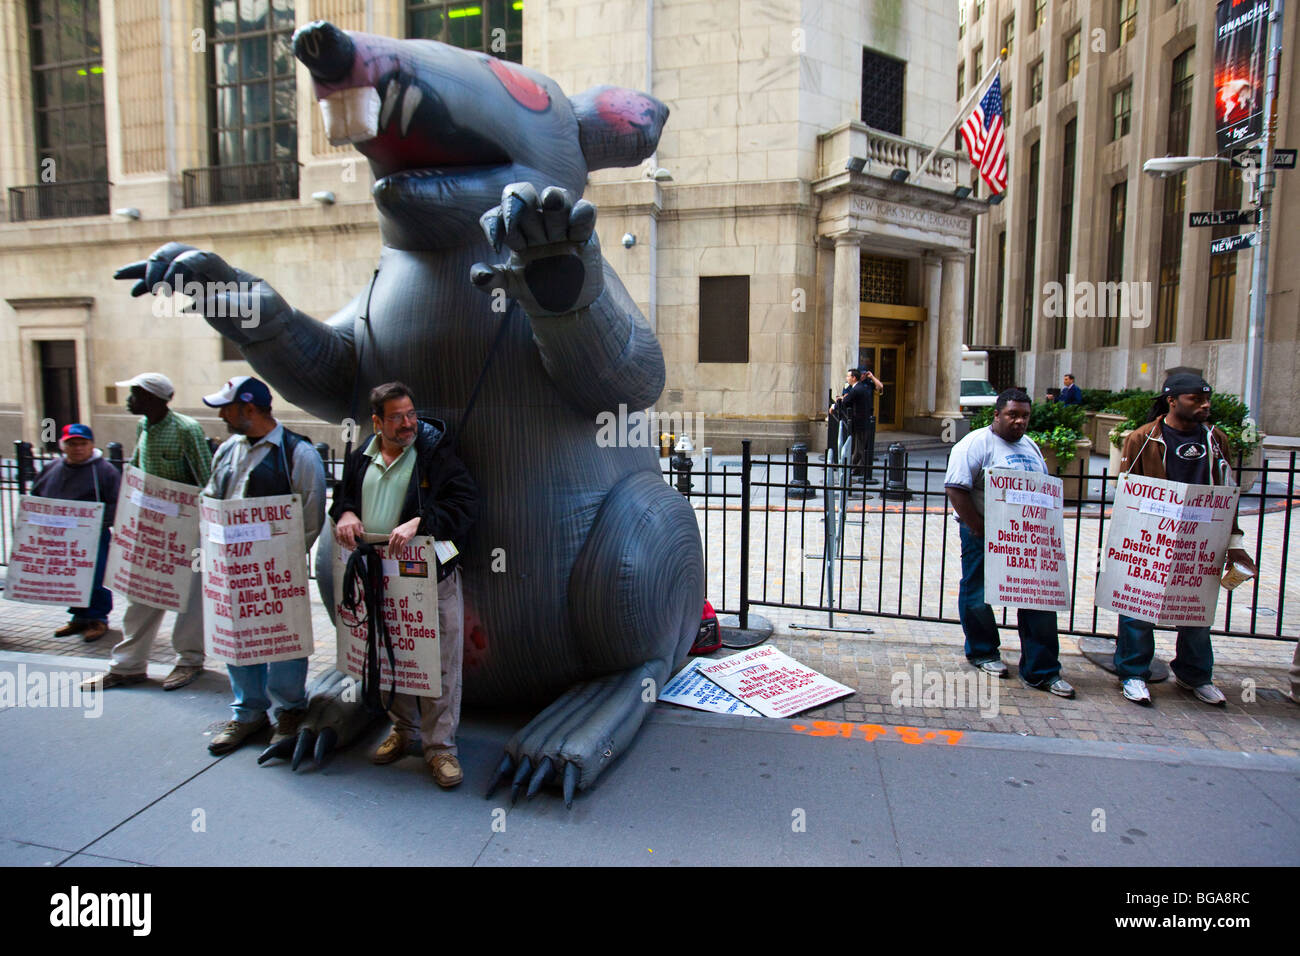 Agrandir la Rat Union contre le piquetage des pratiques déloyales de travail en face de la Bourse de New York, New York City Banque D'Images